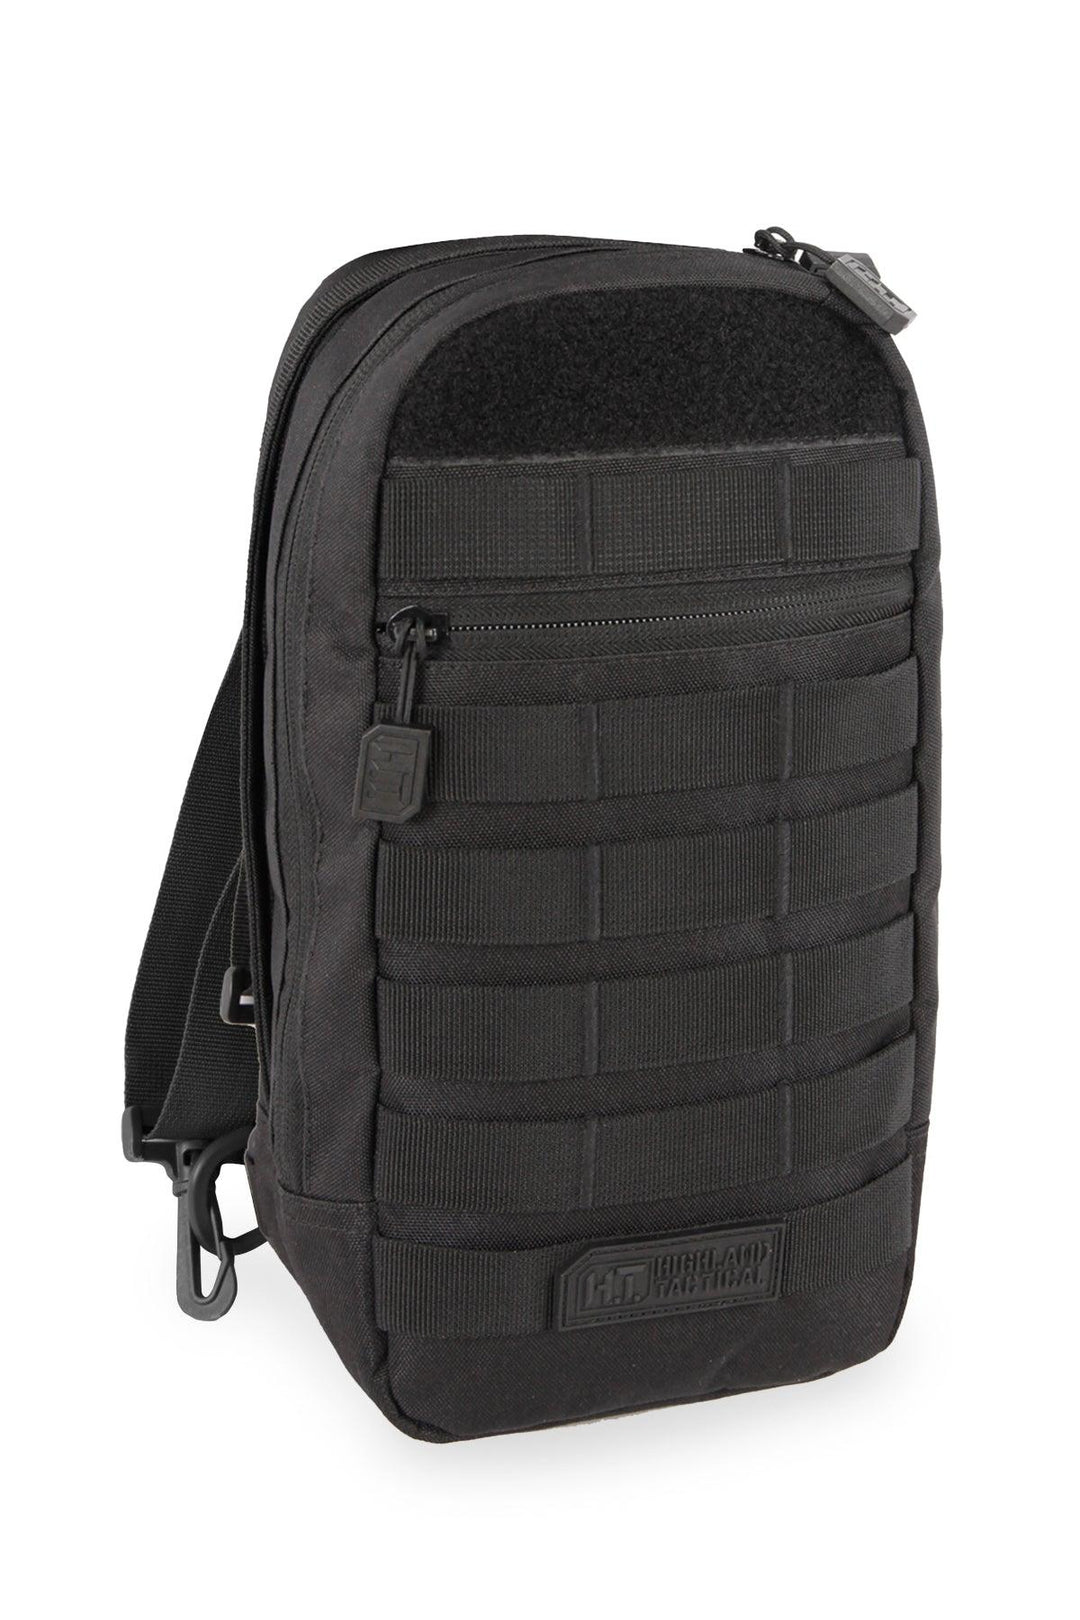 Highland Tactical Brand Timer Black Messenger Bag - HL-MB-1-BK